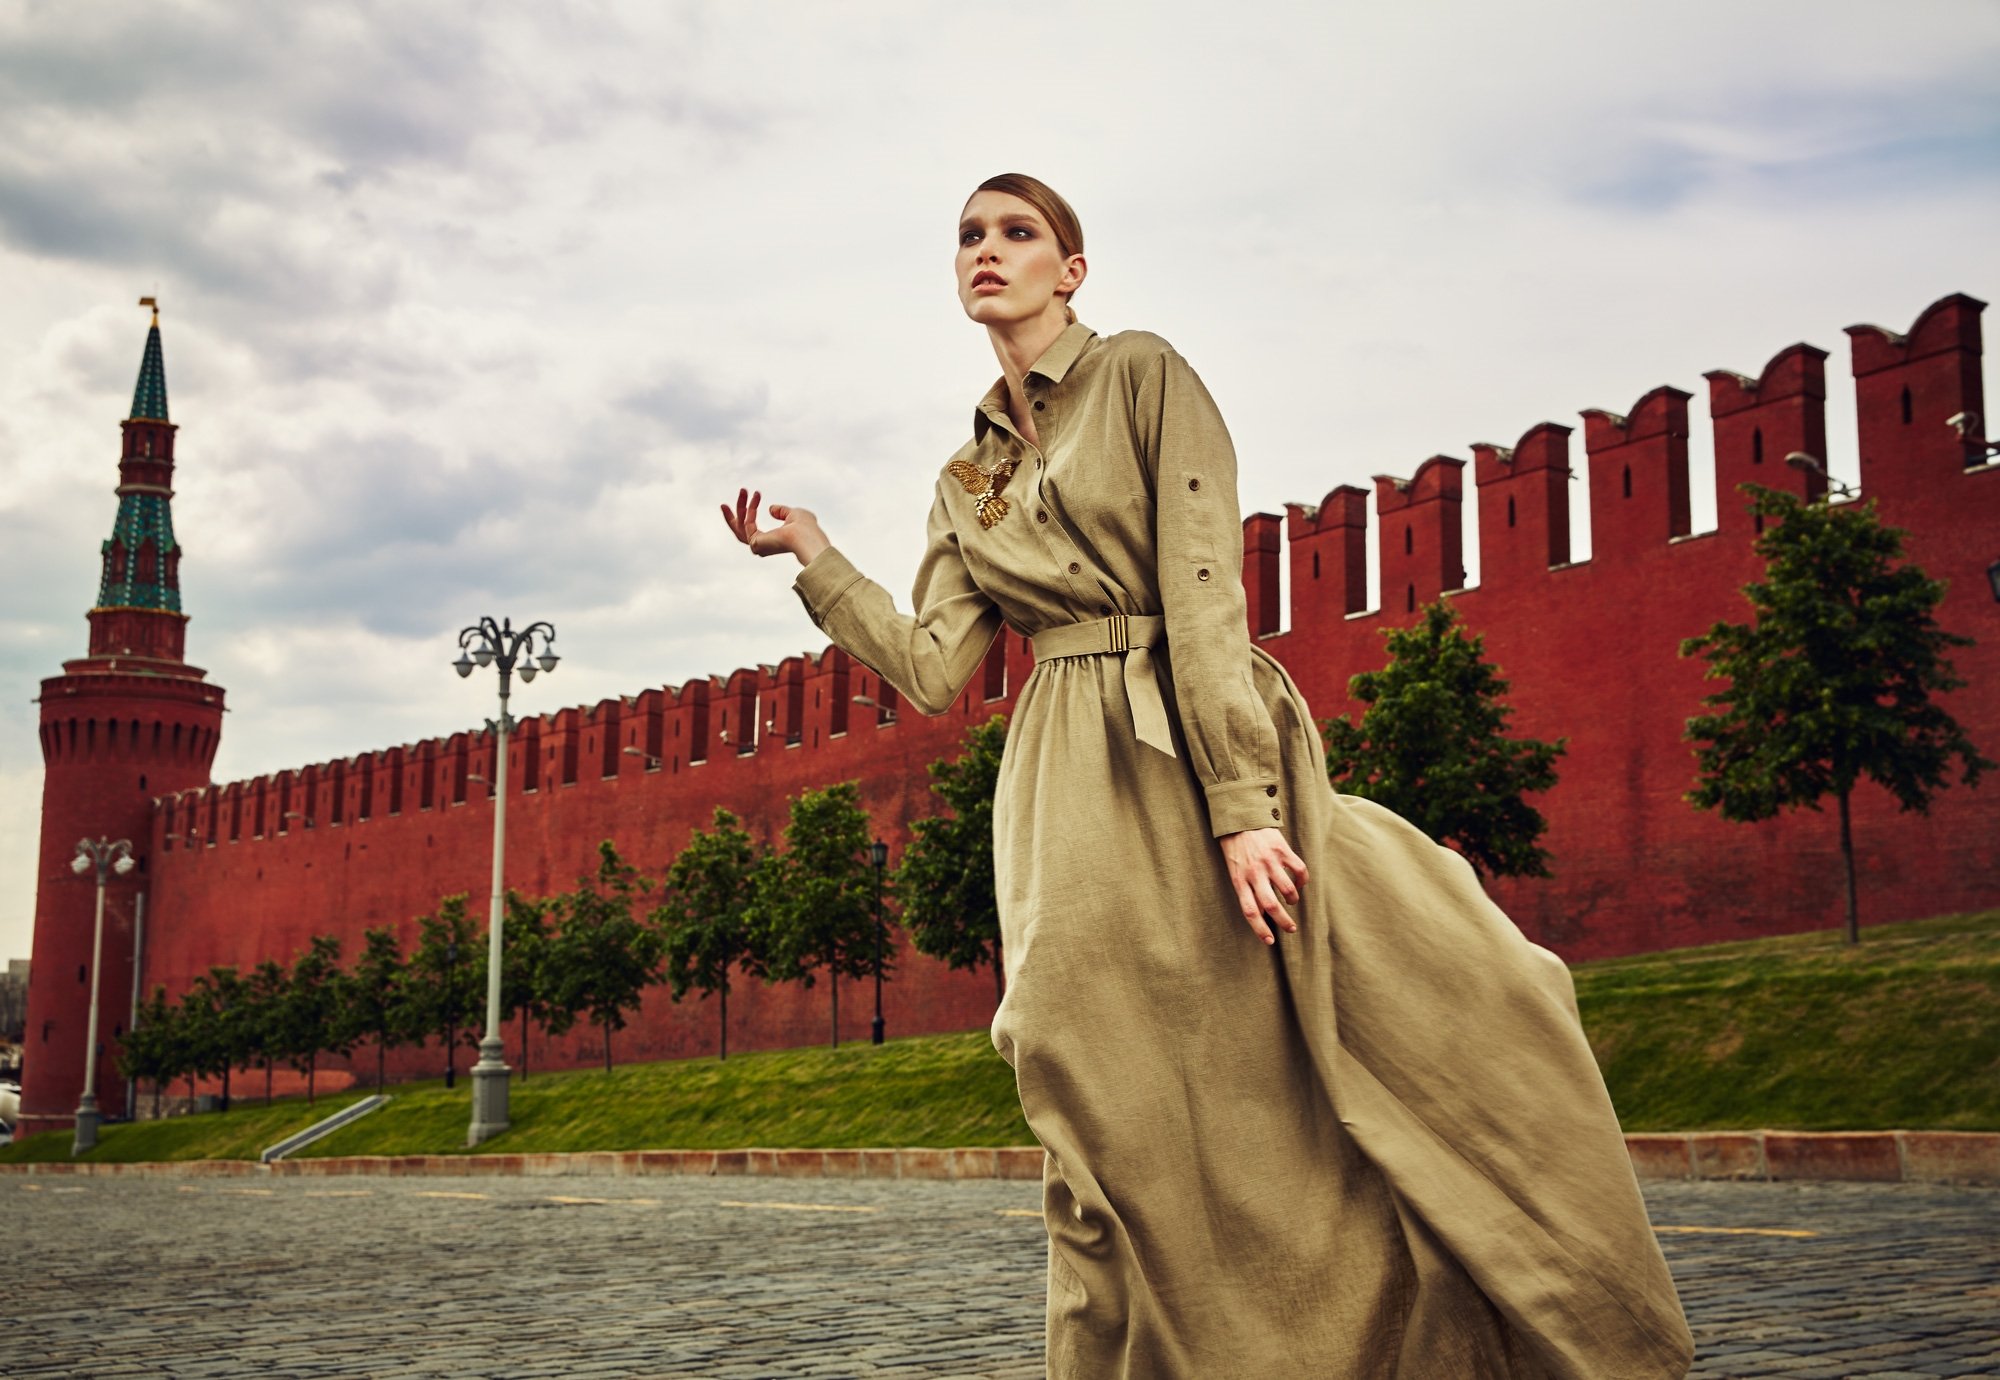 She went to moscow she. Фотосессия в стиле революции. Девушка на красной площади. Фотосессия на красной площади. Фотосессия на фоне Кремля.